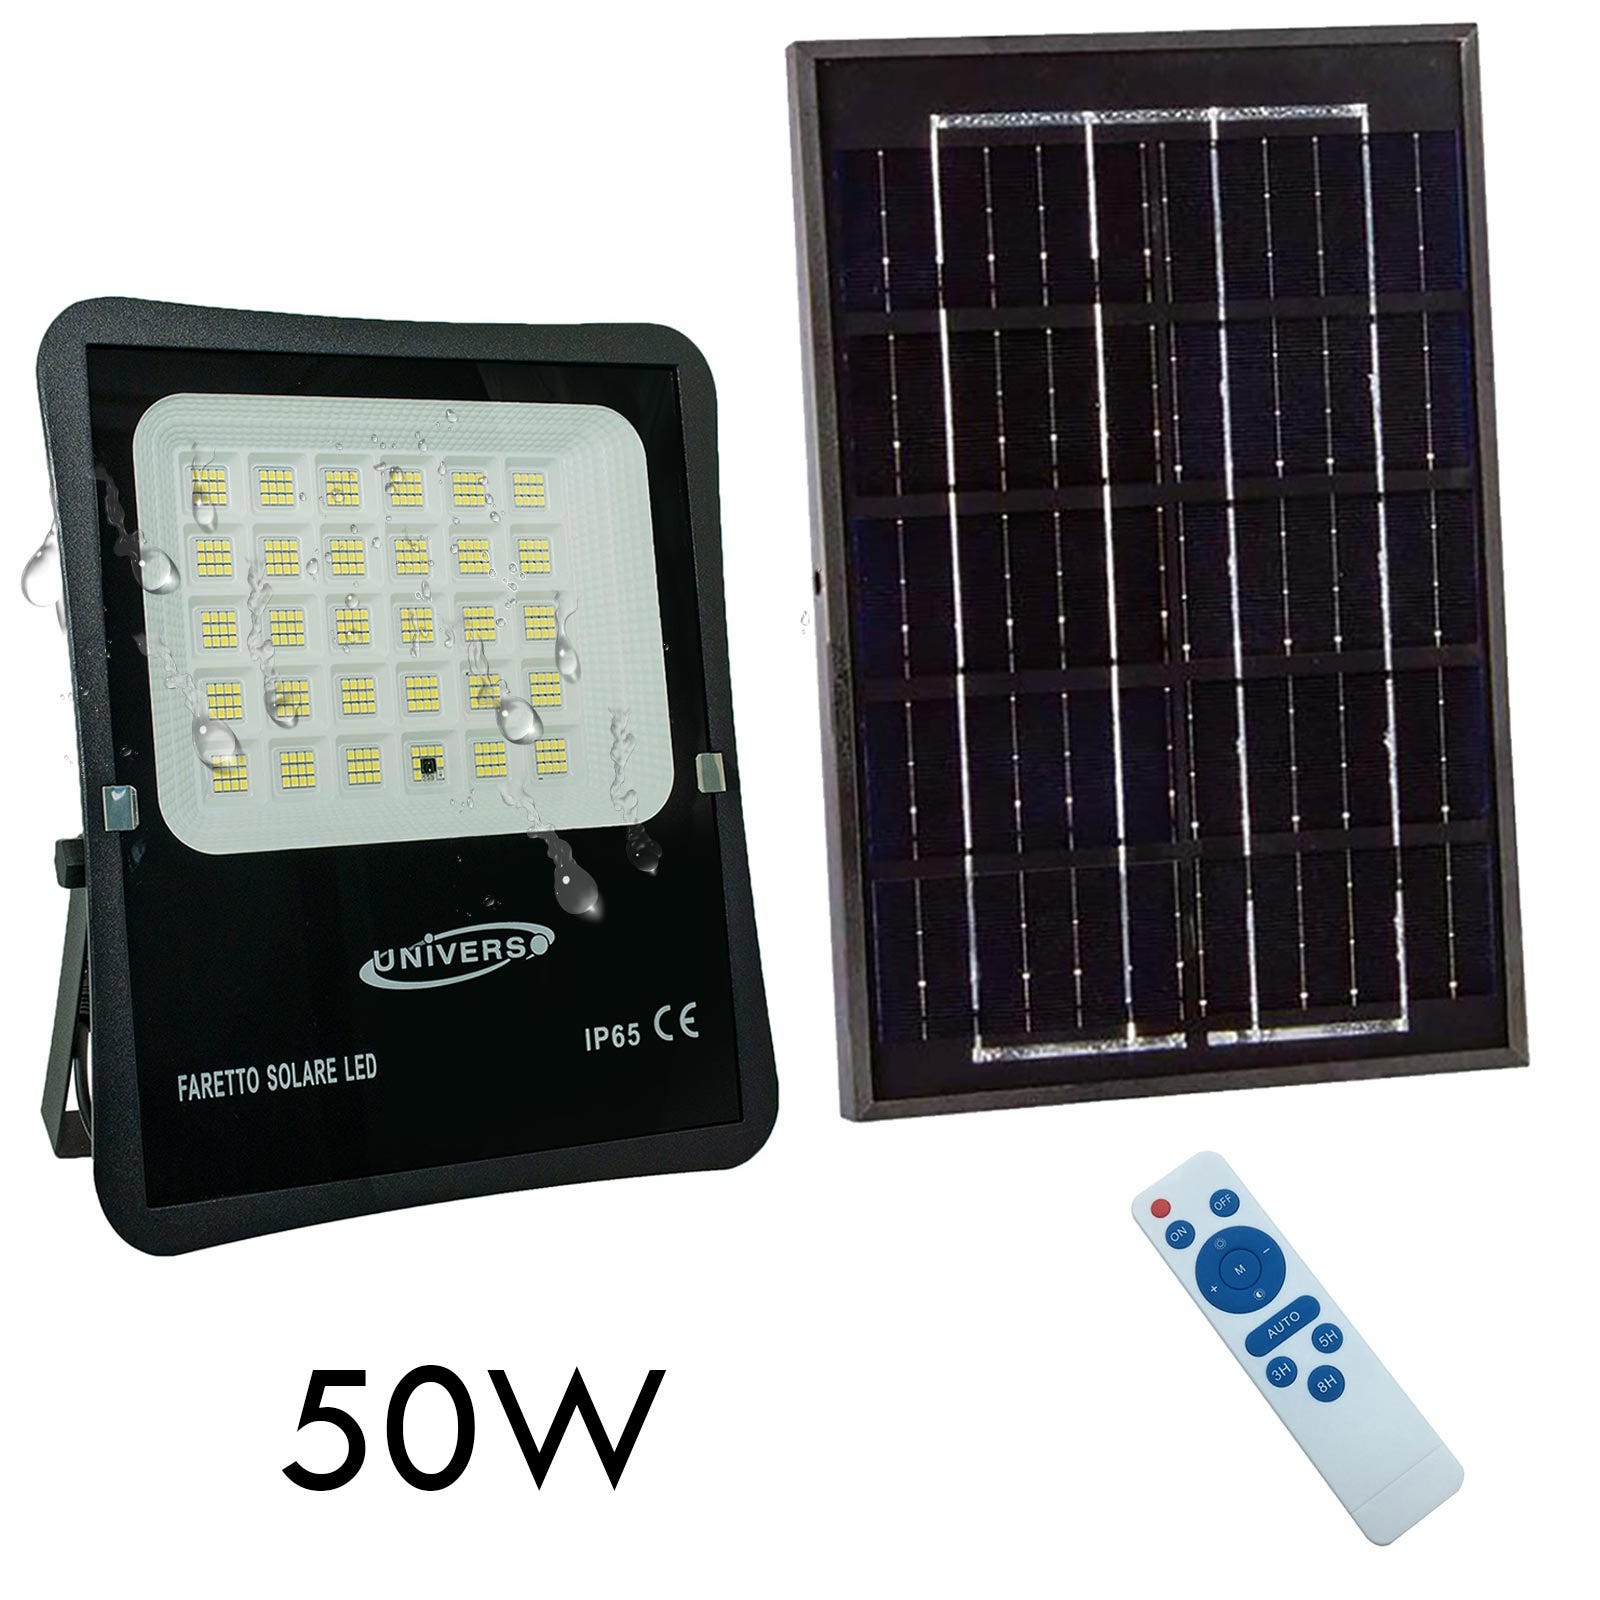 Faro pannello solare IP65 elevata autonomia 12 ore sensore crepuscolare  faretto luce sicurezza giardino cancello 50W